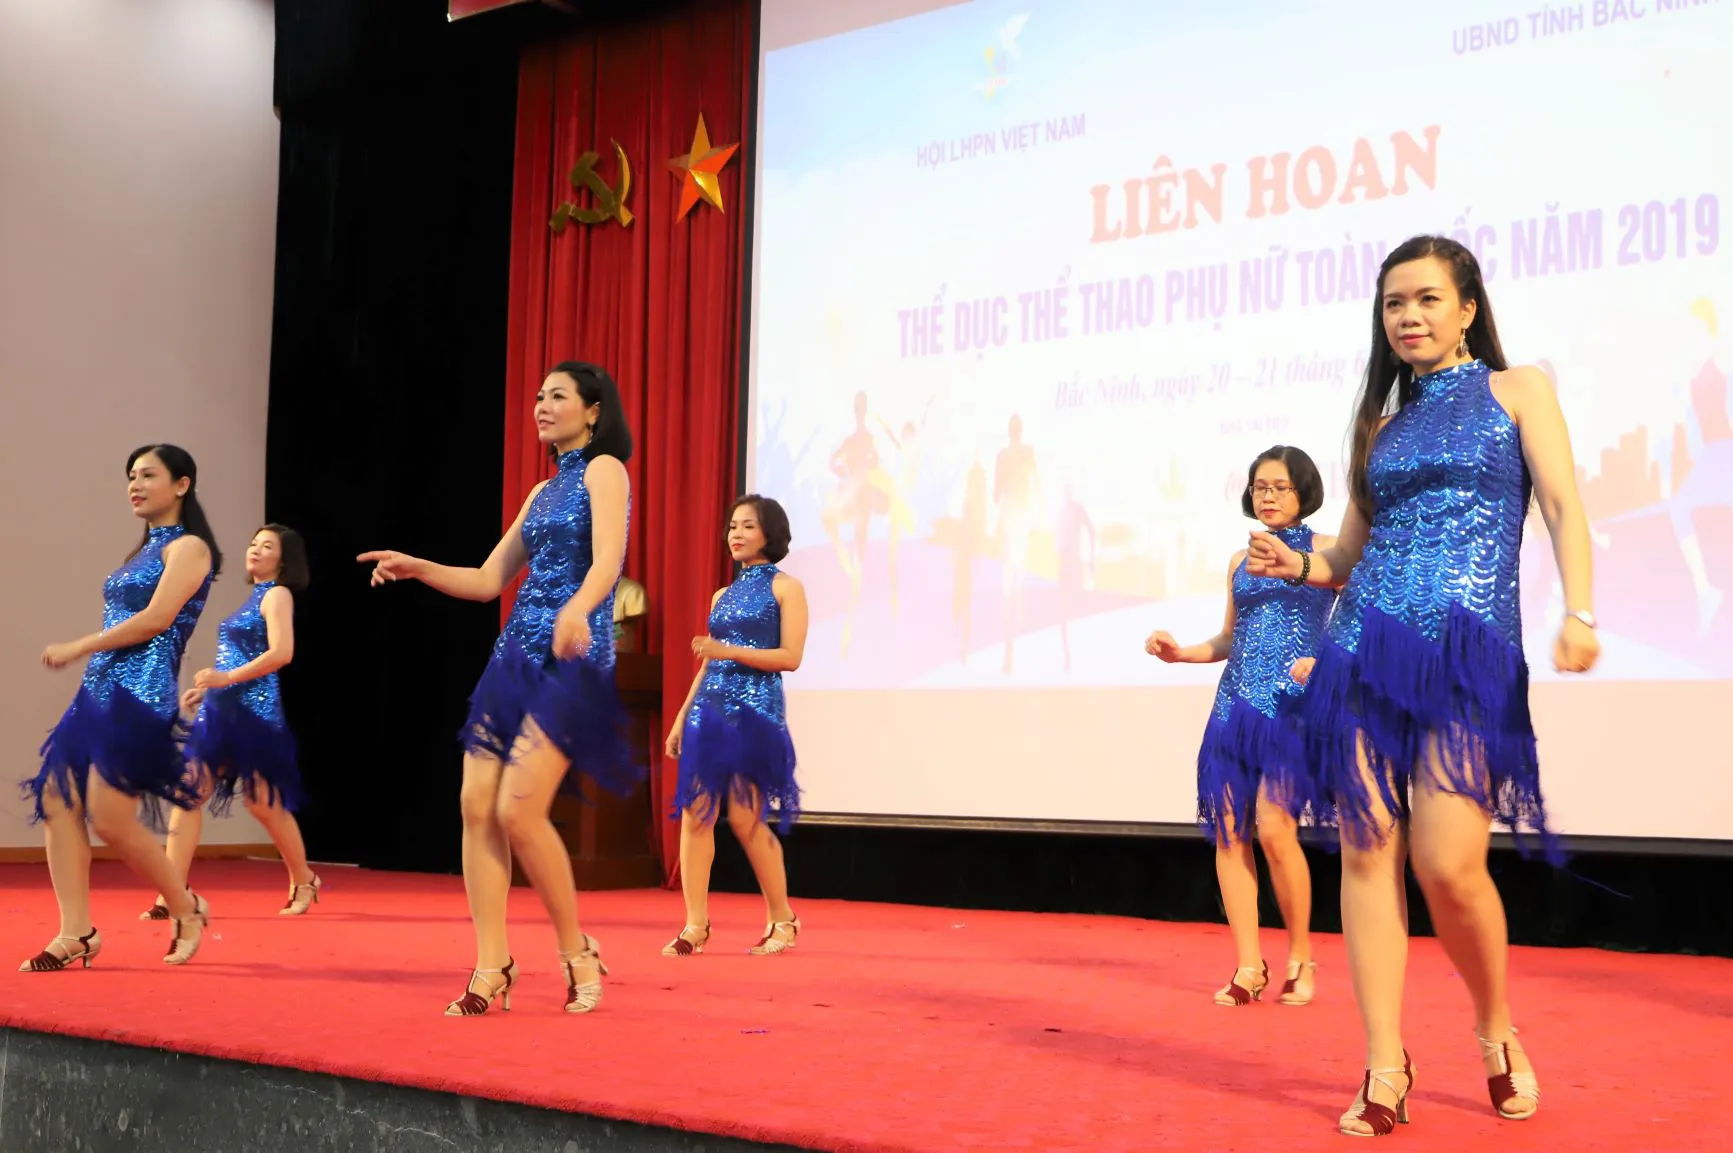 Lựa chọn tông váy màu xanh với thiết kế đầu nữ tính, thướt tha, các nữ vận động viên của Hội LHPN Việt Nam mang đến hai tiết mục nhảy dance sport vừa nhẹ nhàng uyển chuyển nhưng không kém phần năng động